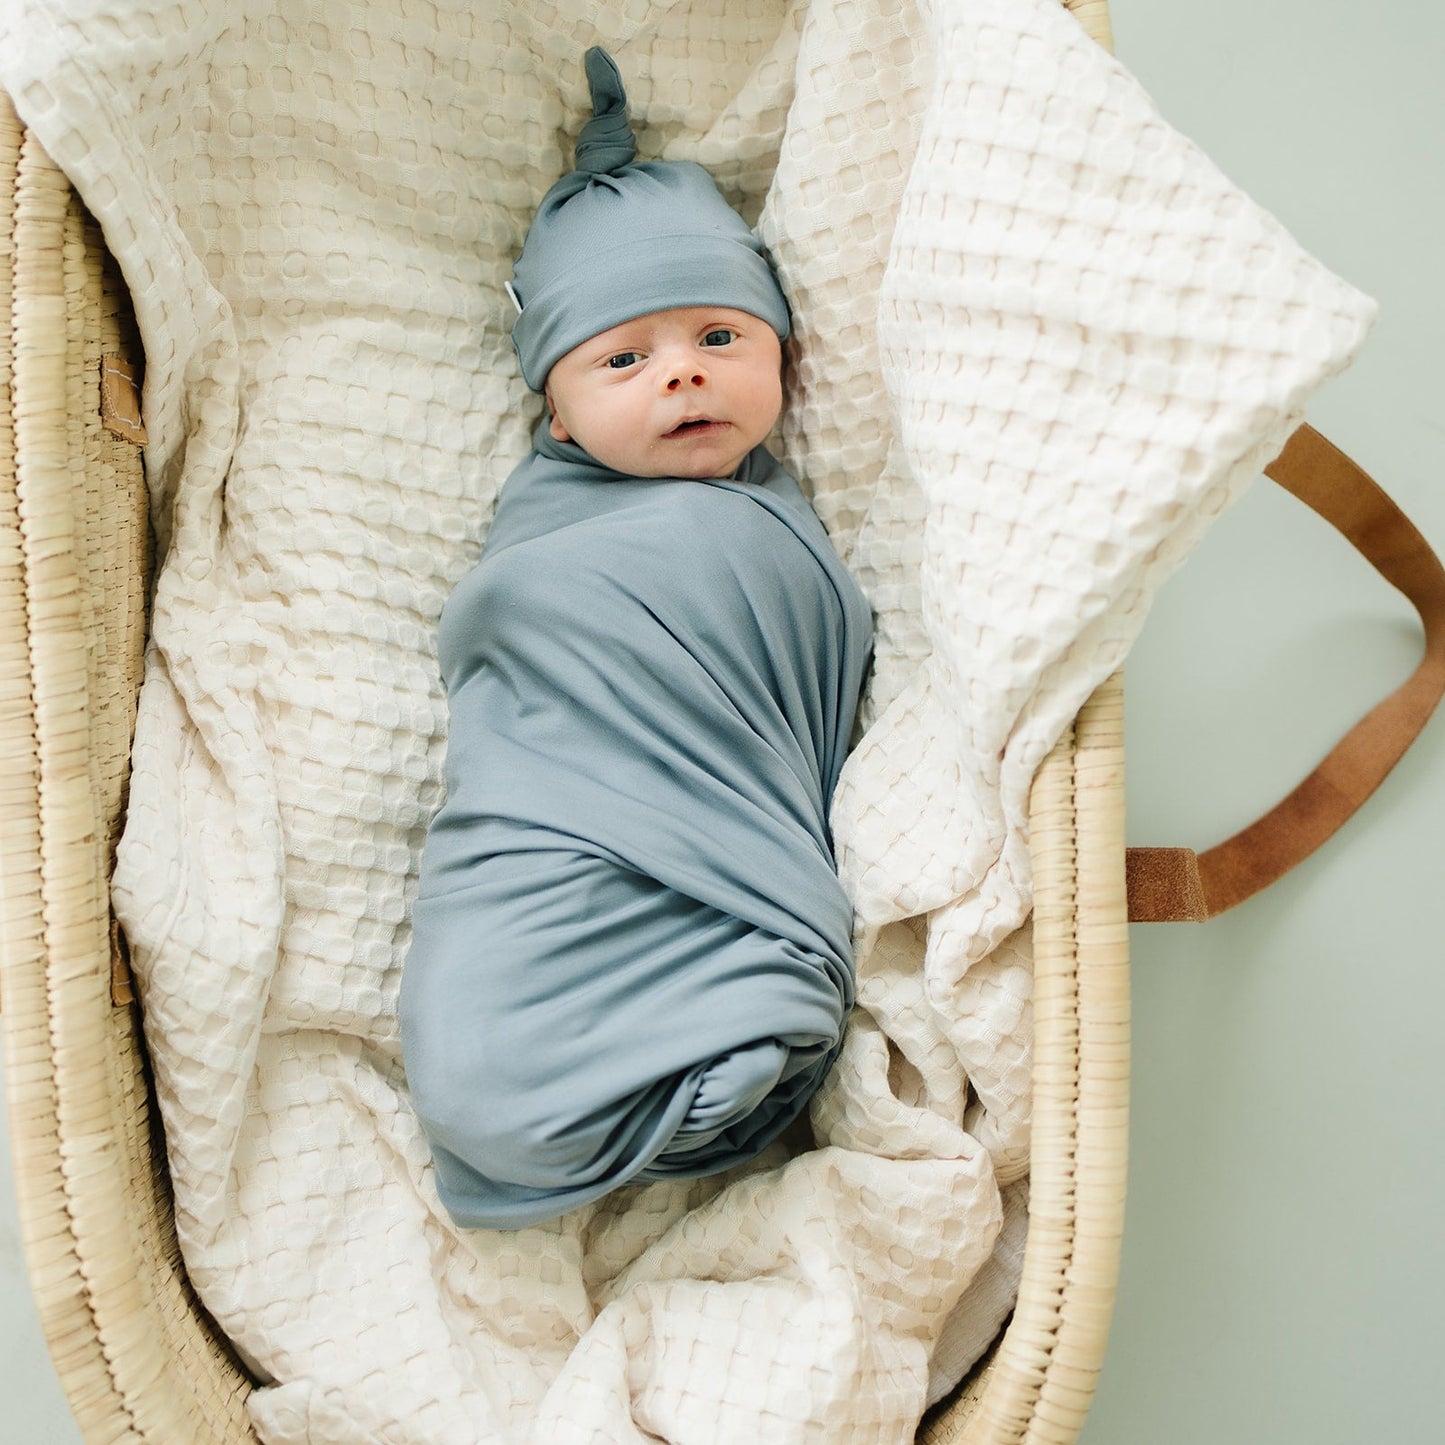 Mebie Baby Swaddle + Hat Or Head Wrap Set - Dusty Blue